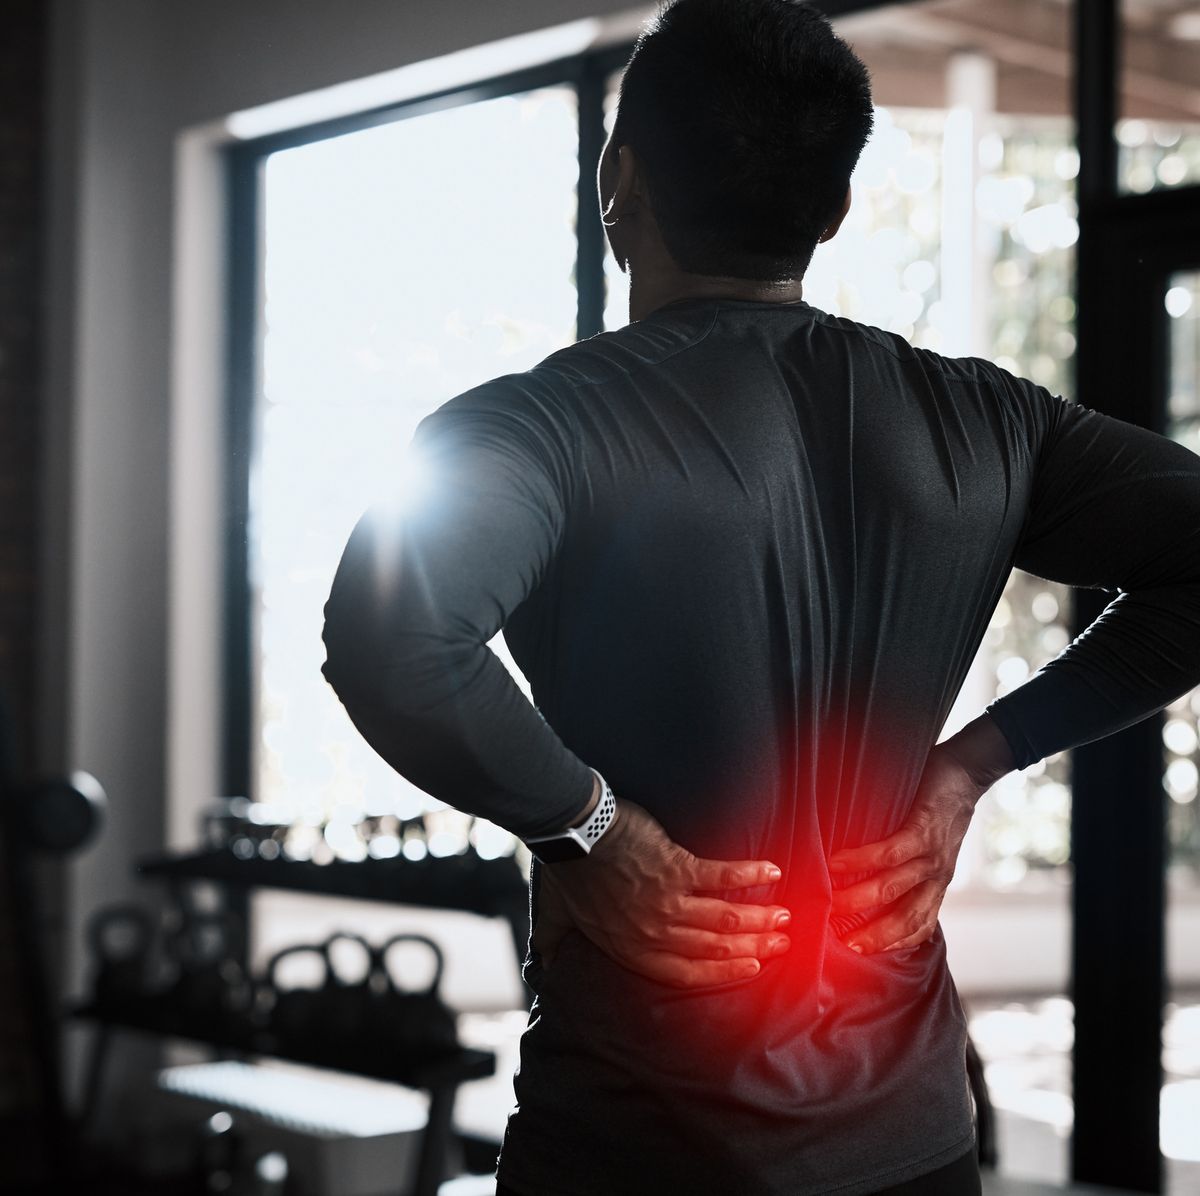 Dolor de espalda y gimnasio: qué hacer y qué evitar